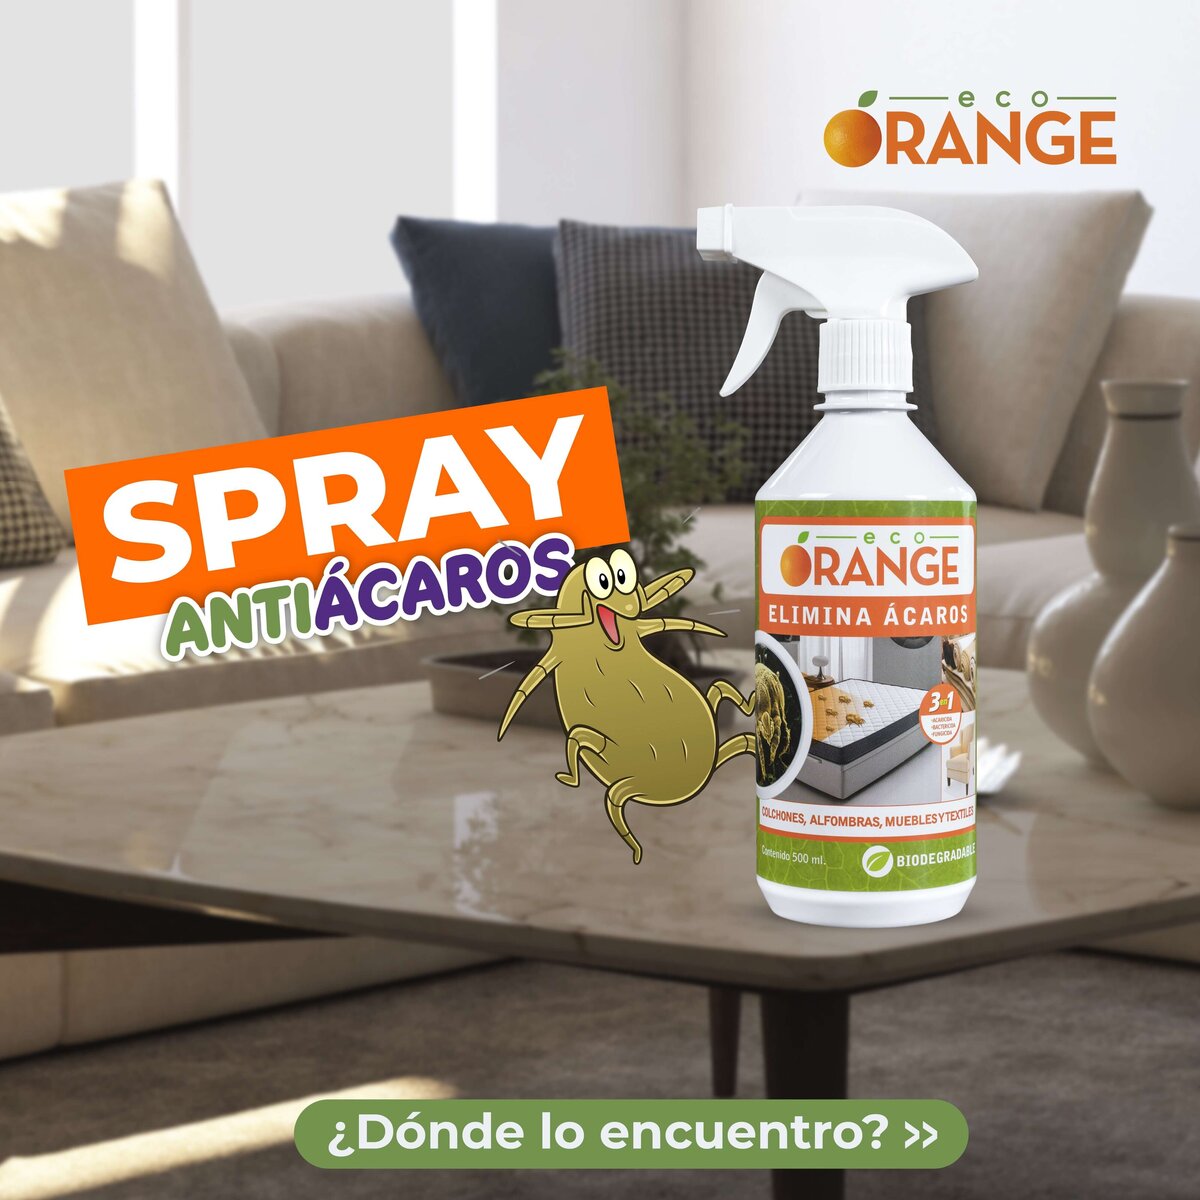 Eco Orange antiacaros